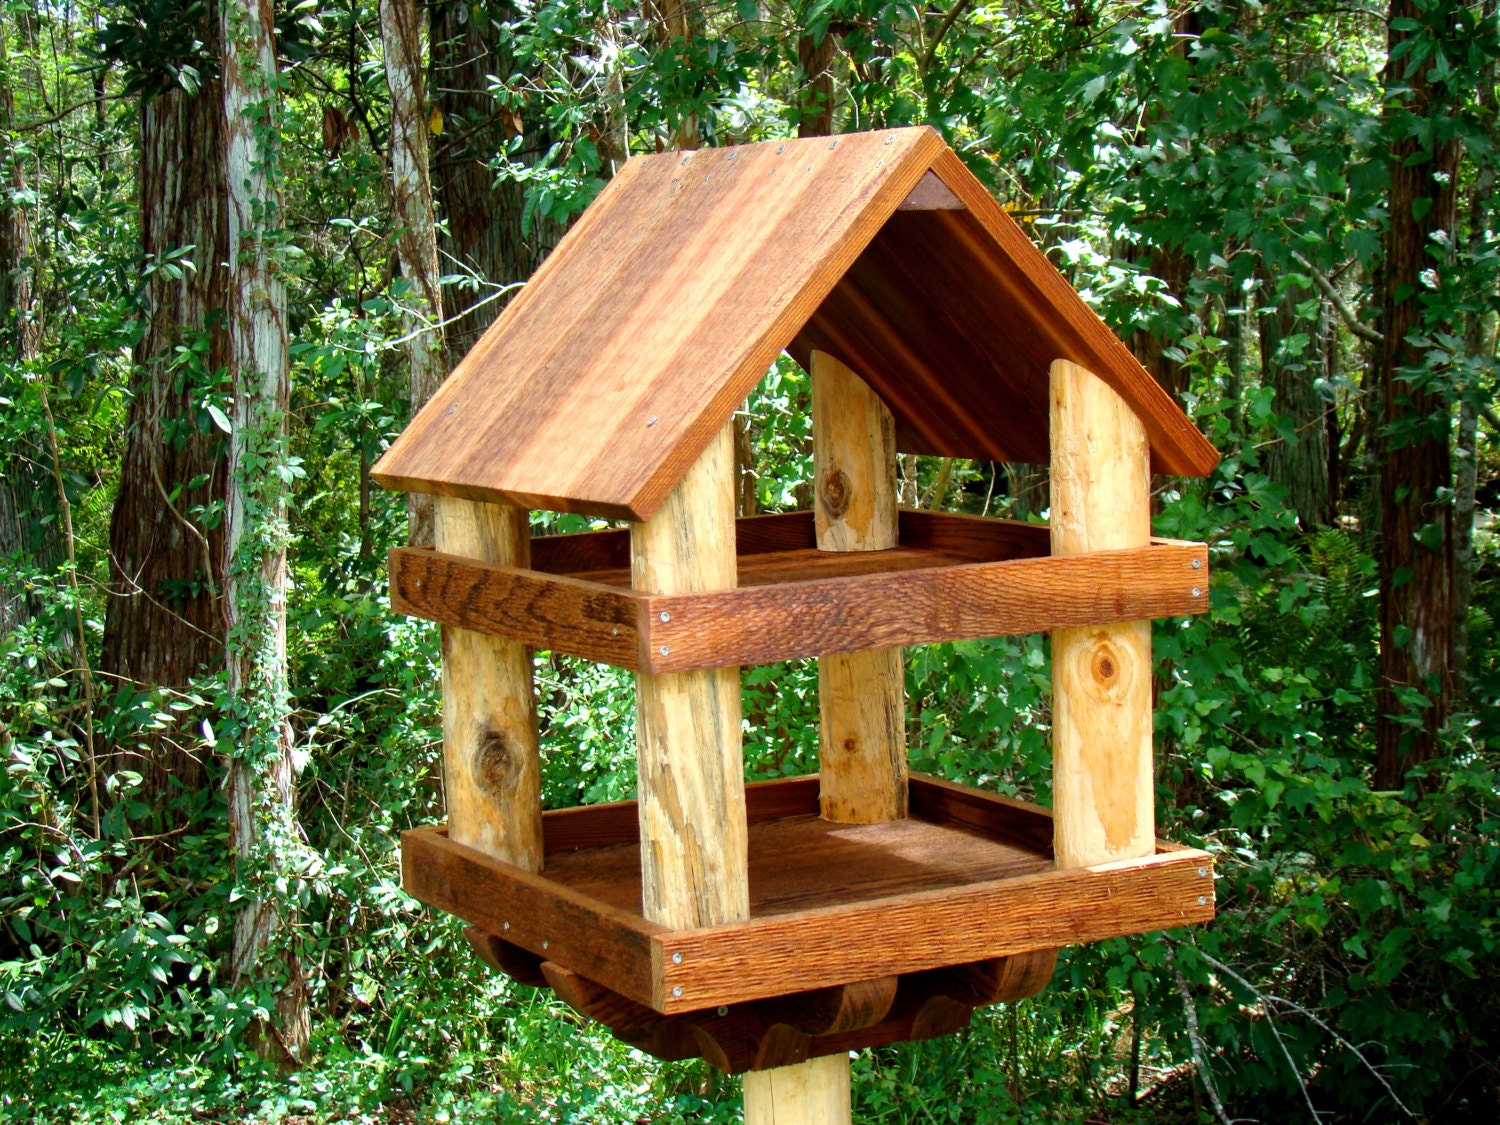 Large wooden bird feeder platform style